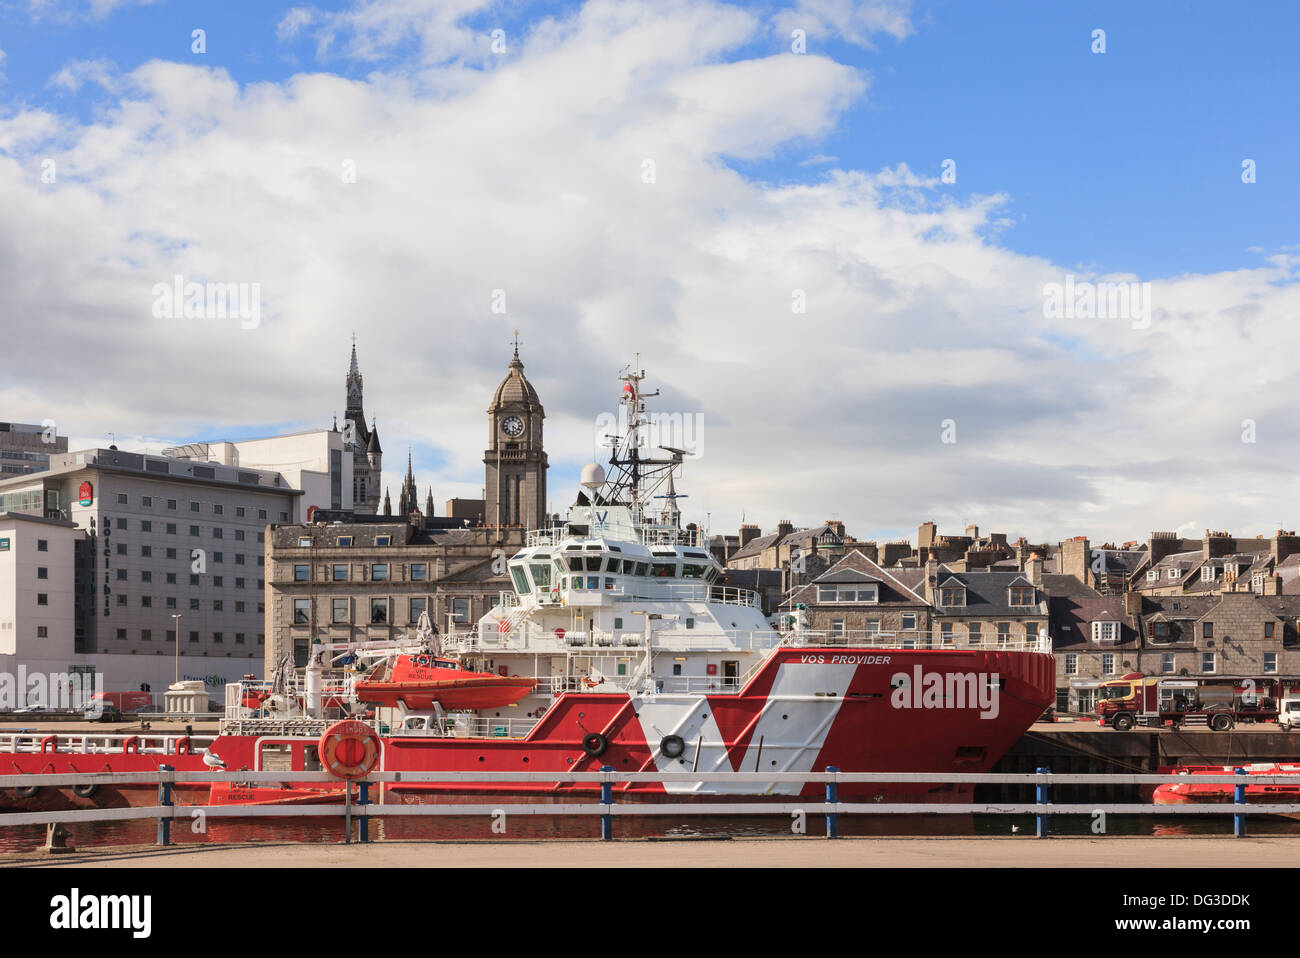 VOS Provider VROON un gruppo di spedizione del Mare del Nord di petrolio offshore Nave di alimentazione nel dock con centro città oltre il porto di Aberdeen Scotland Foto Stock